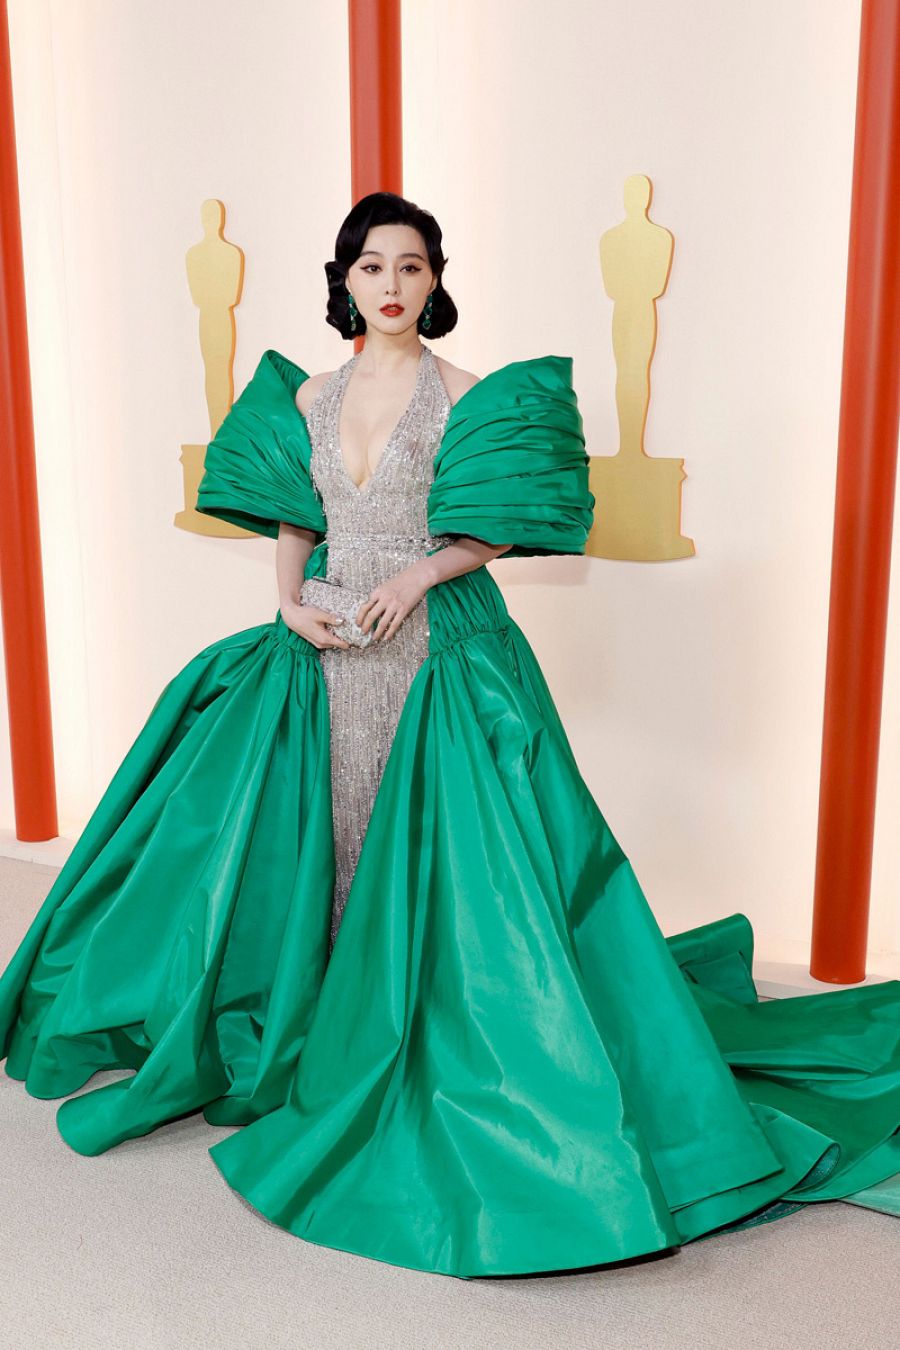 Jennifer Connelly, Los mejores looks de belleza de los premios Oscar 2023